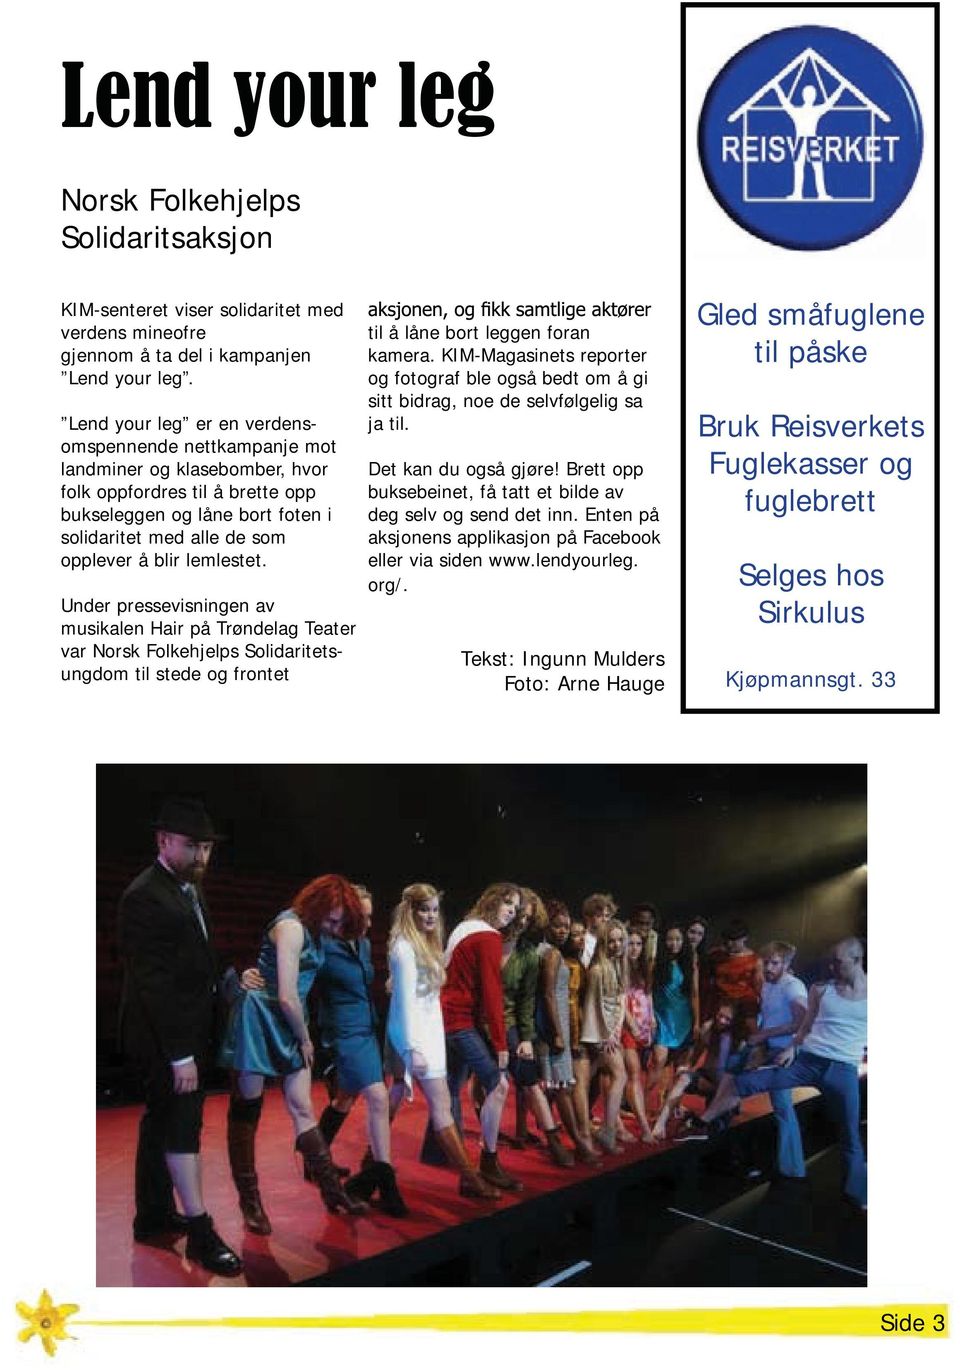 lemlestet. Under pressevisningen av musikalen Hair på Trøndelag Teater var Norsk Folkehjelps Solidaritetsungdom til stede og frontet til å låne bort leggen foran kamera.